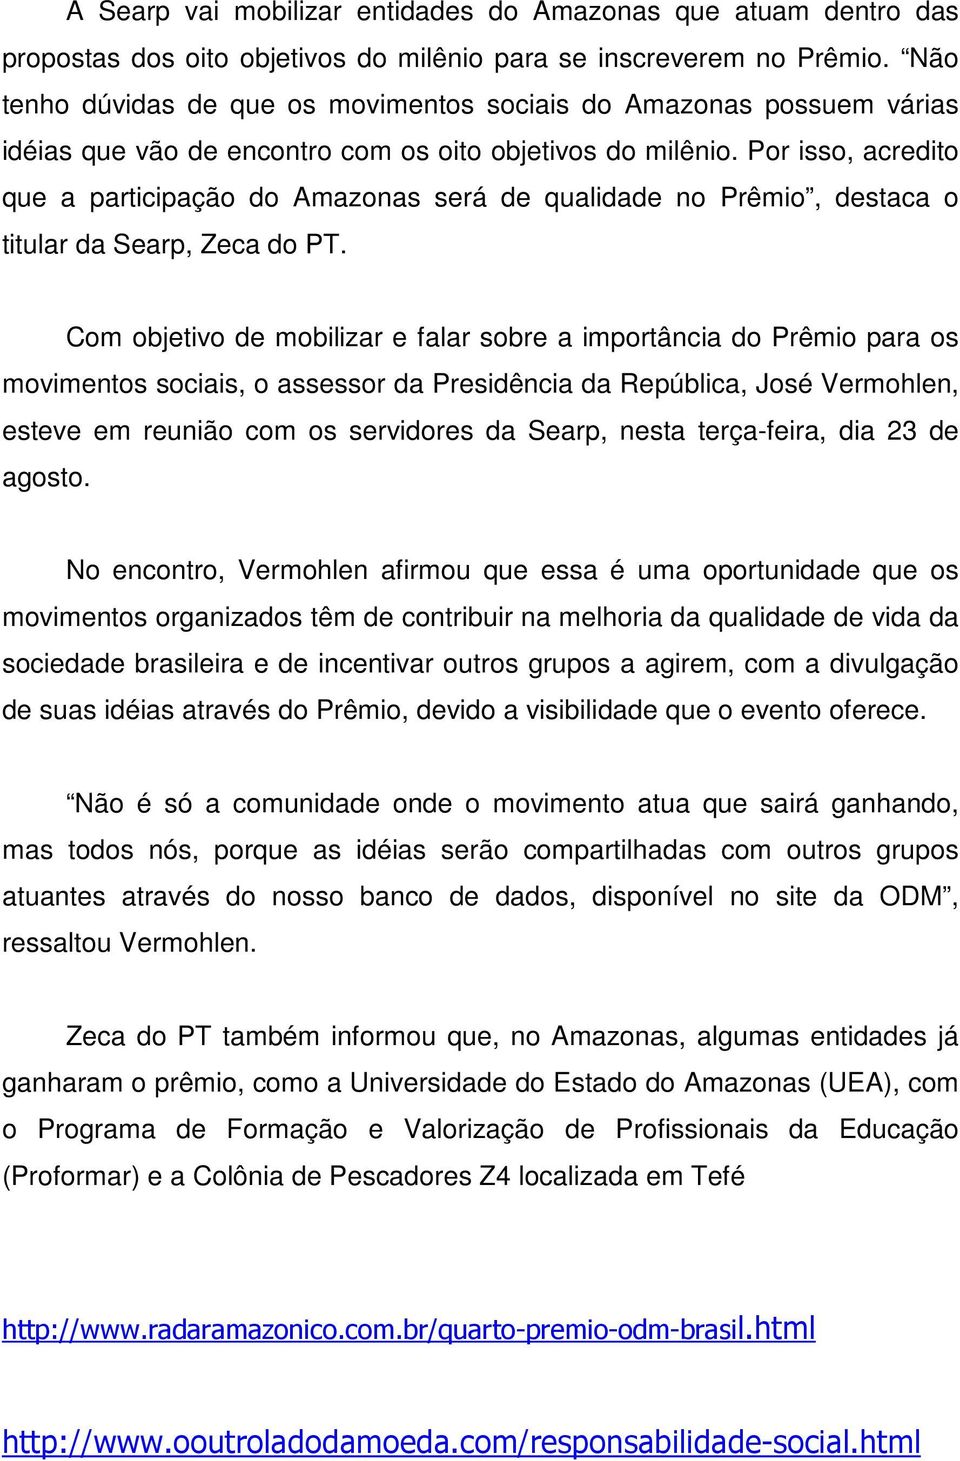 Por isso, acredito que a participação do Amazonas será de qualidade no Prêmio, destaca o titular da Searp, Zeca do PT.